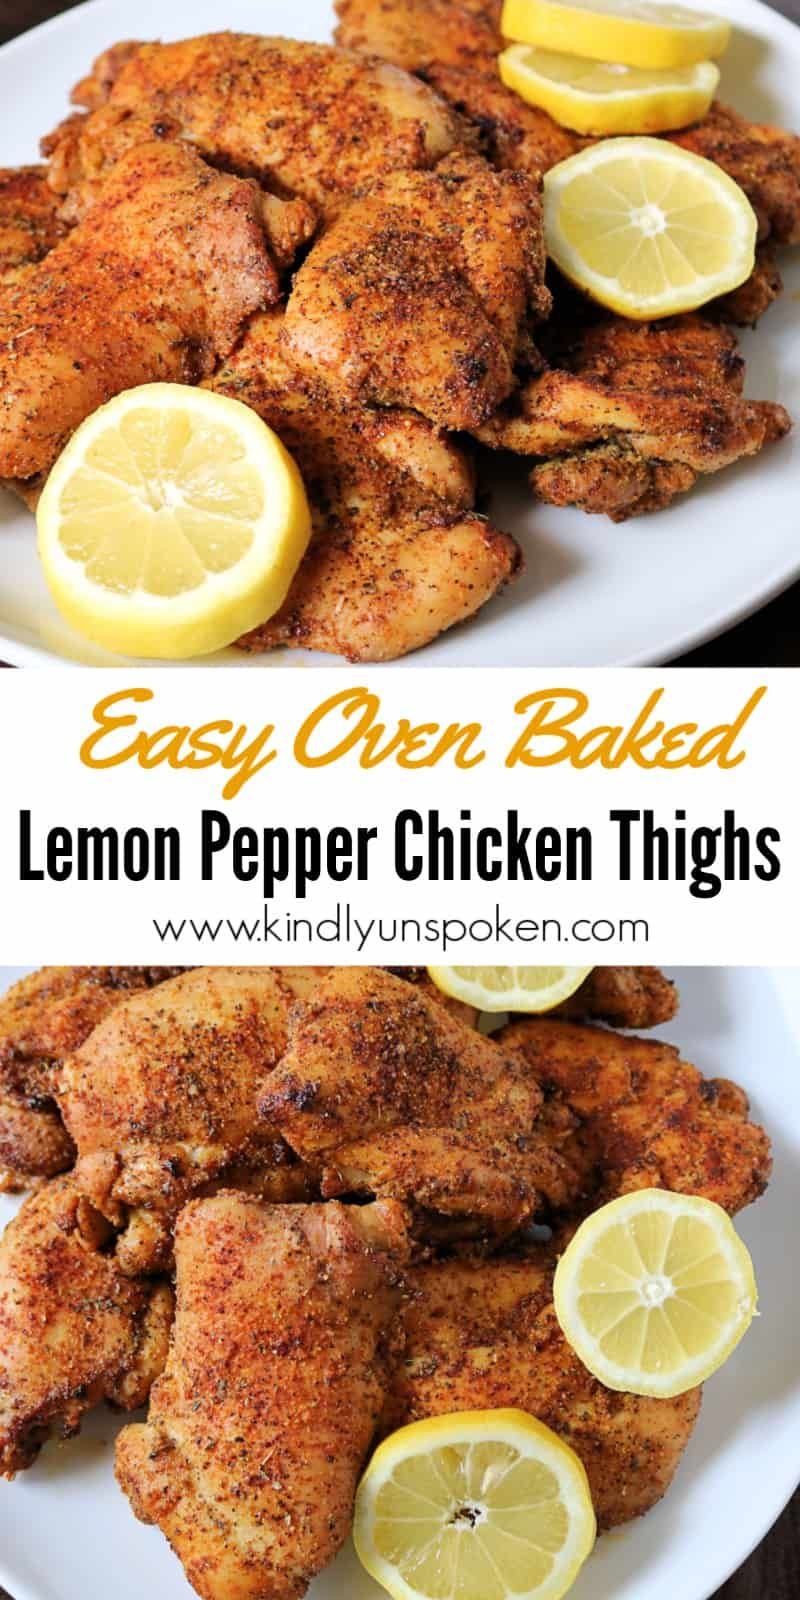 Baked Lemon Pepper Chicken Thighs
 Oven Baked Lemon Pepper Chicken Thighs